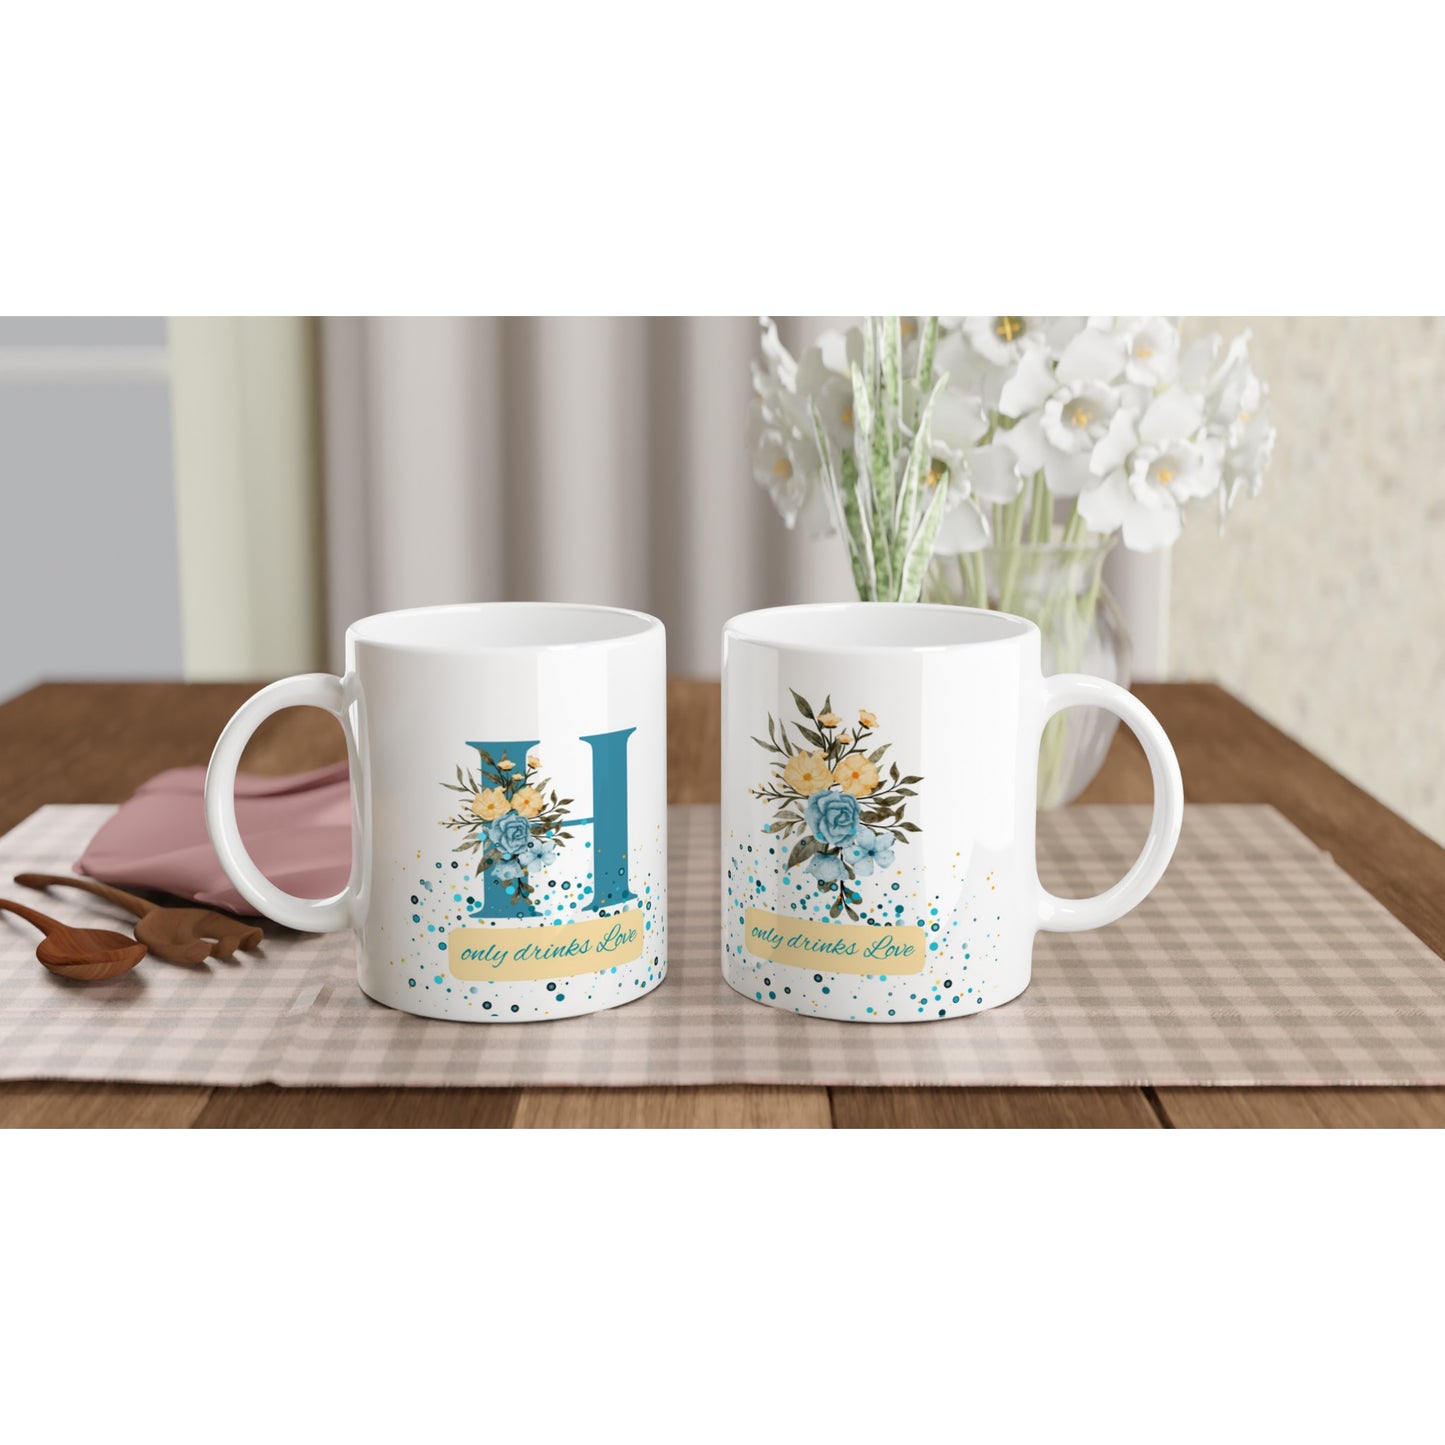 "H Only Drinks Love" White Mug with Blue Letter H - 11oz Ceramic Mug- Gift Idea